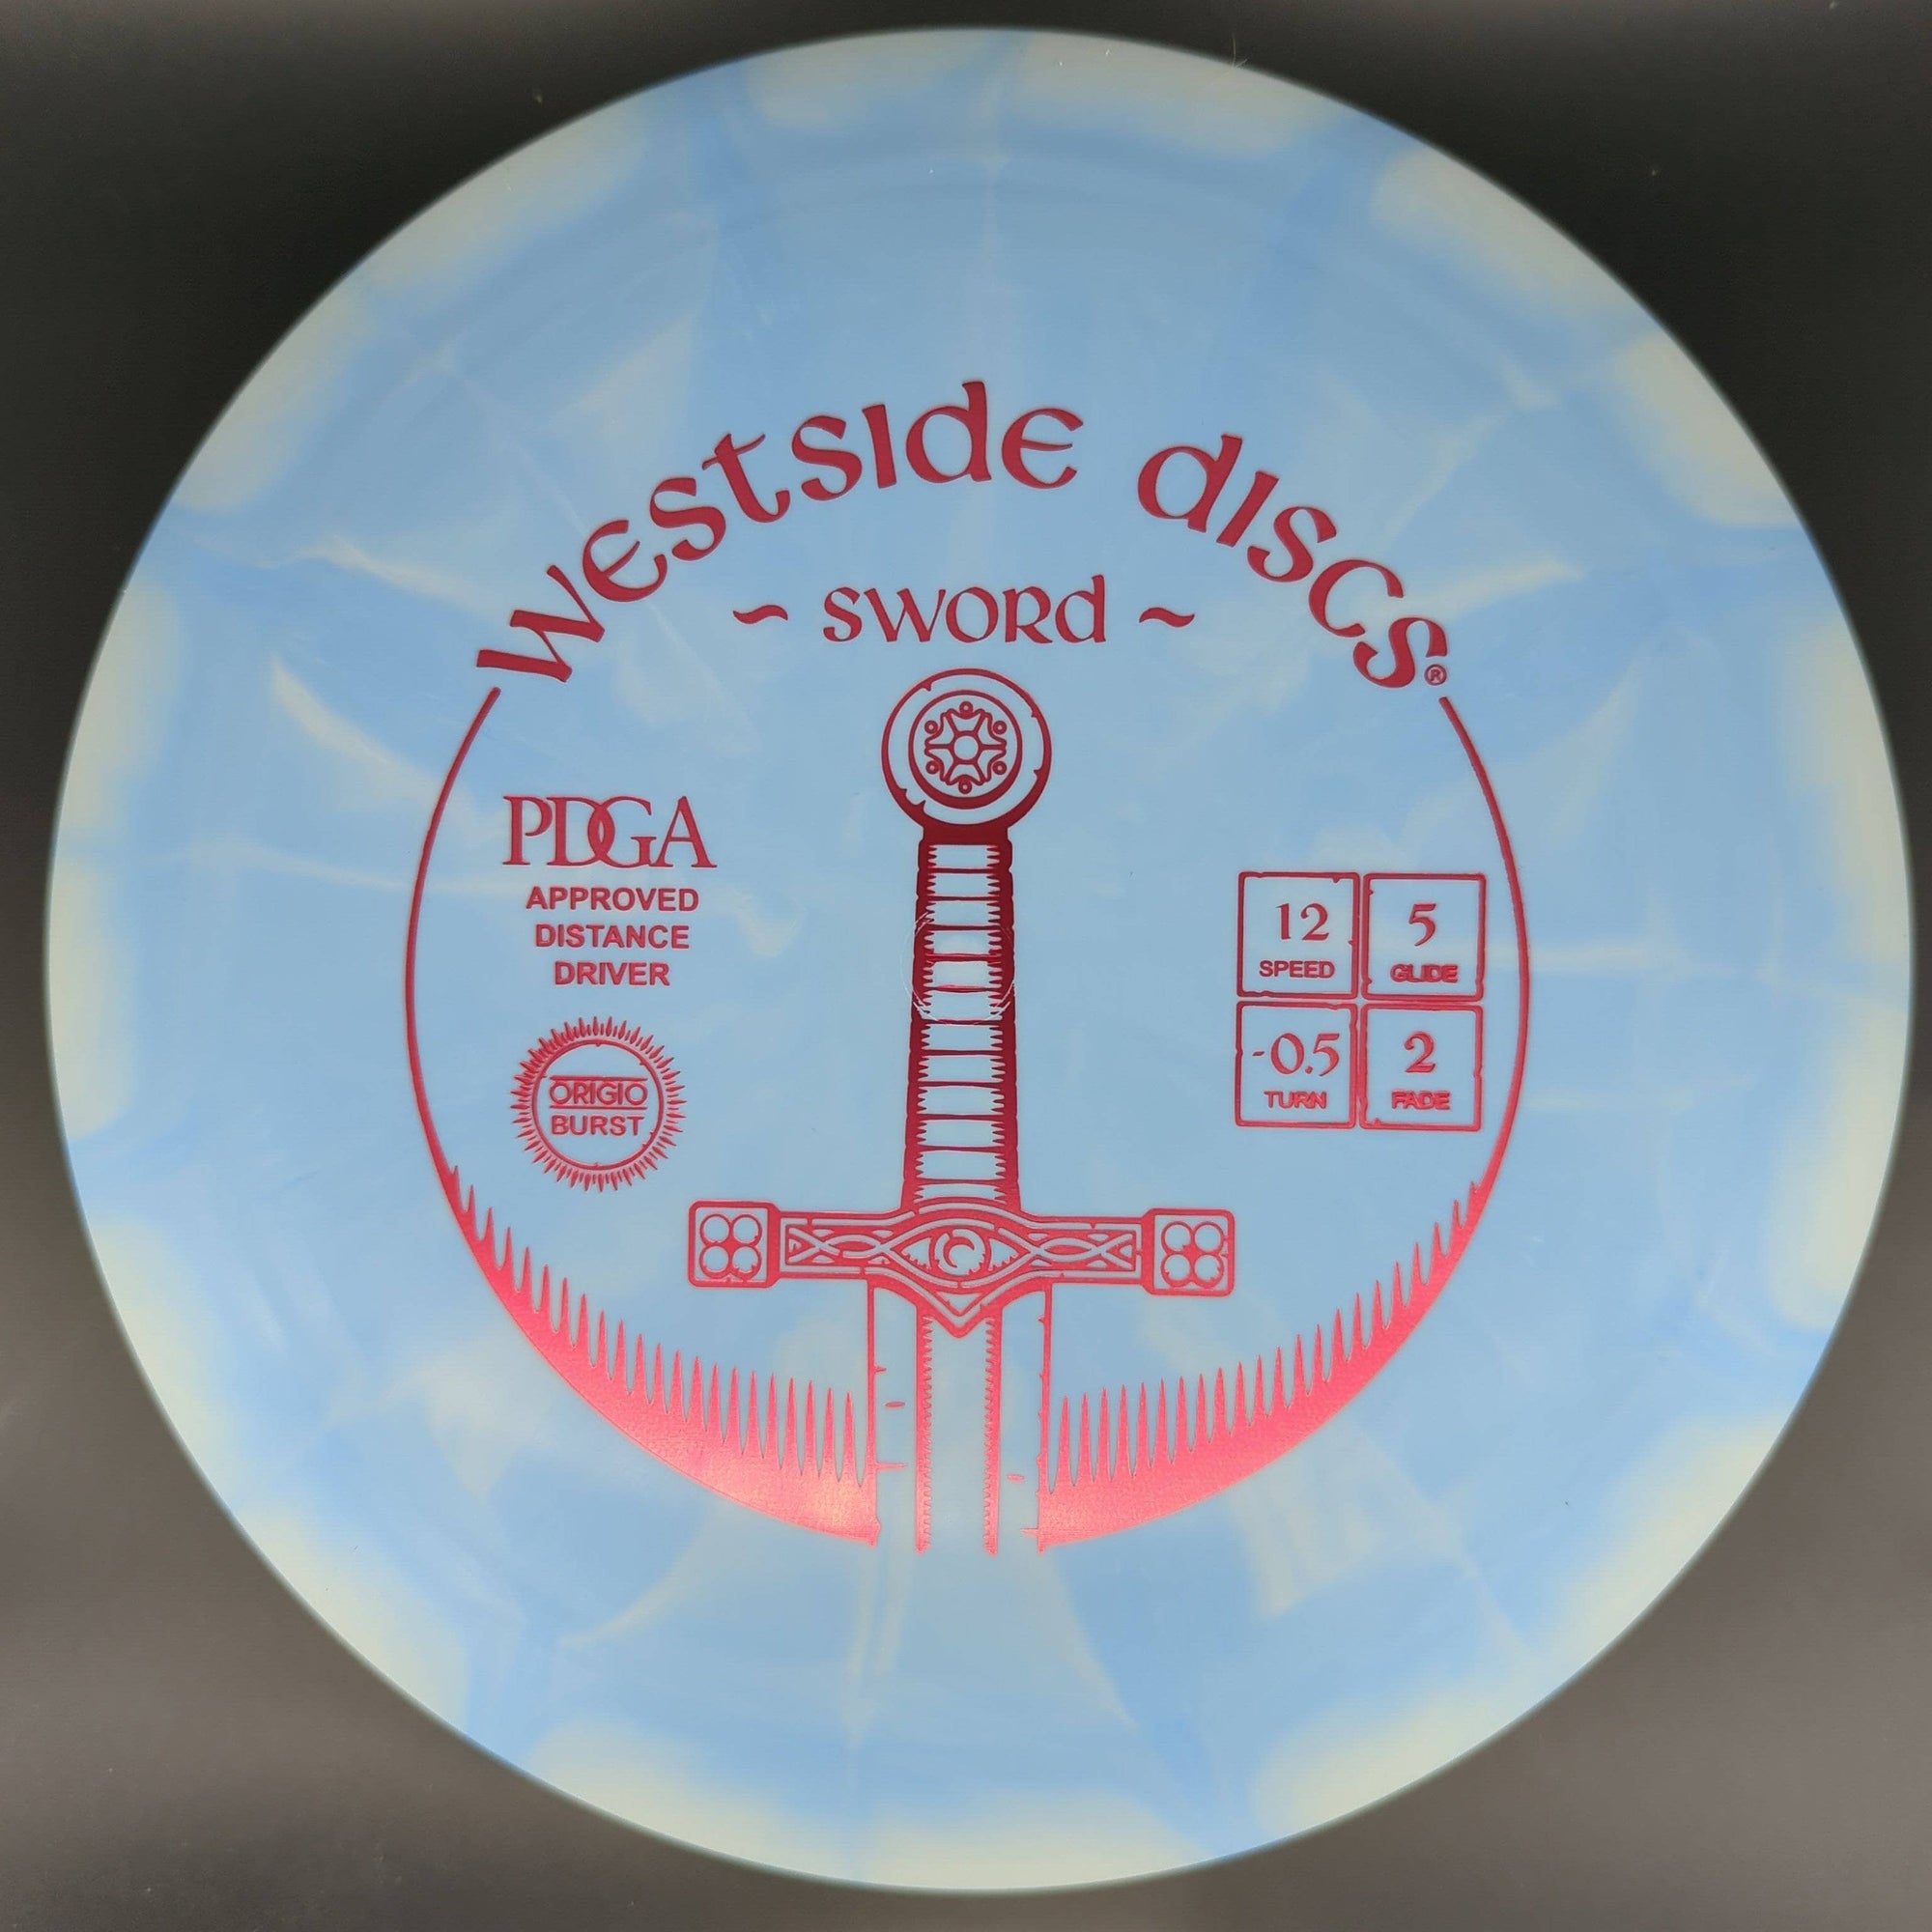 Westside Discs Distance Driver Origio Burst, Sword